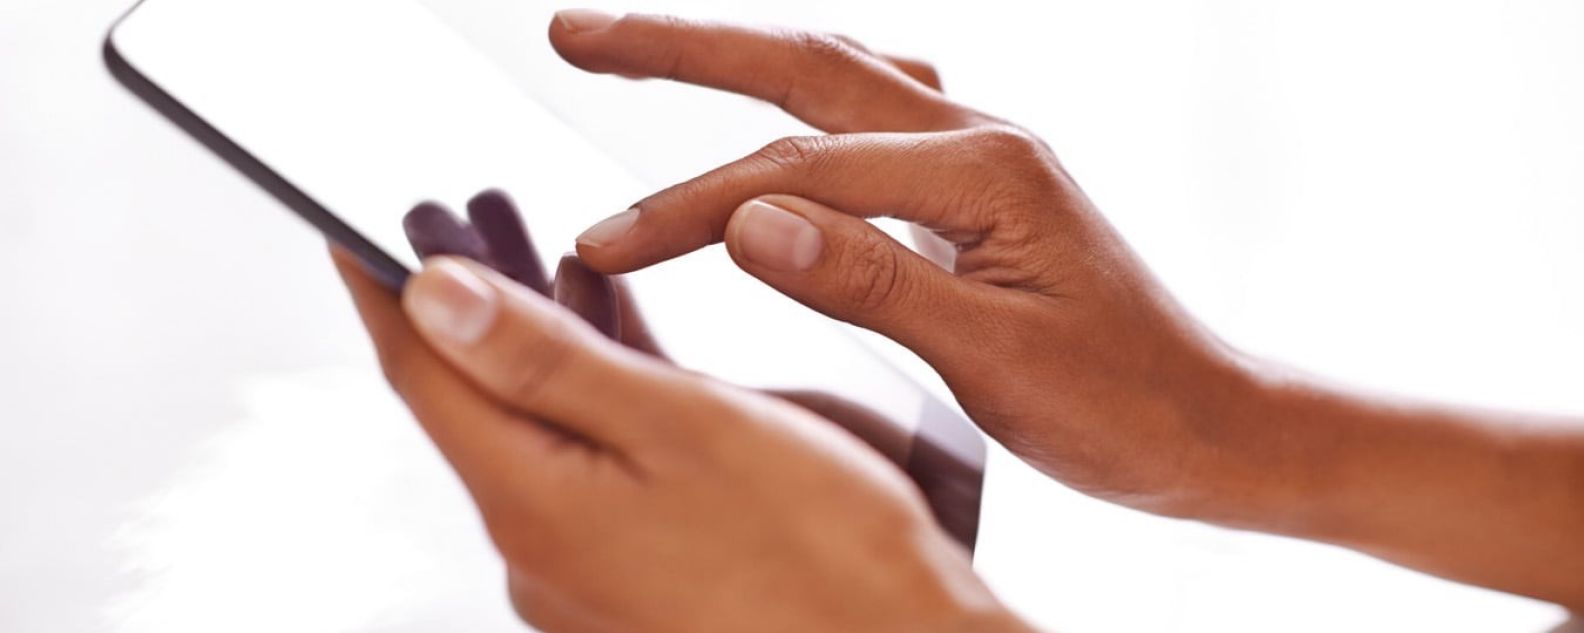 태블릿 화면을 터치하는 손가락 클로즈업